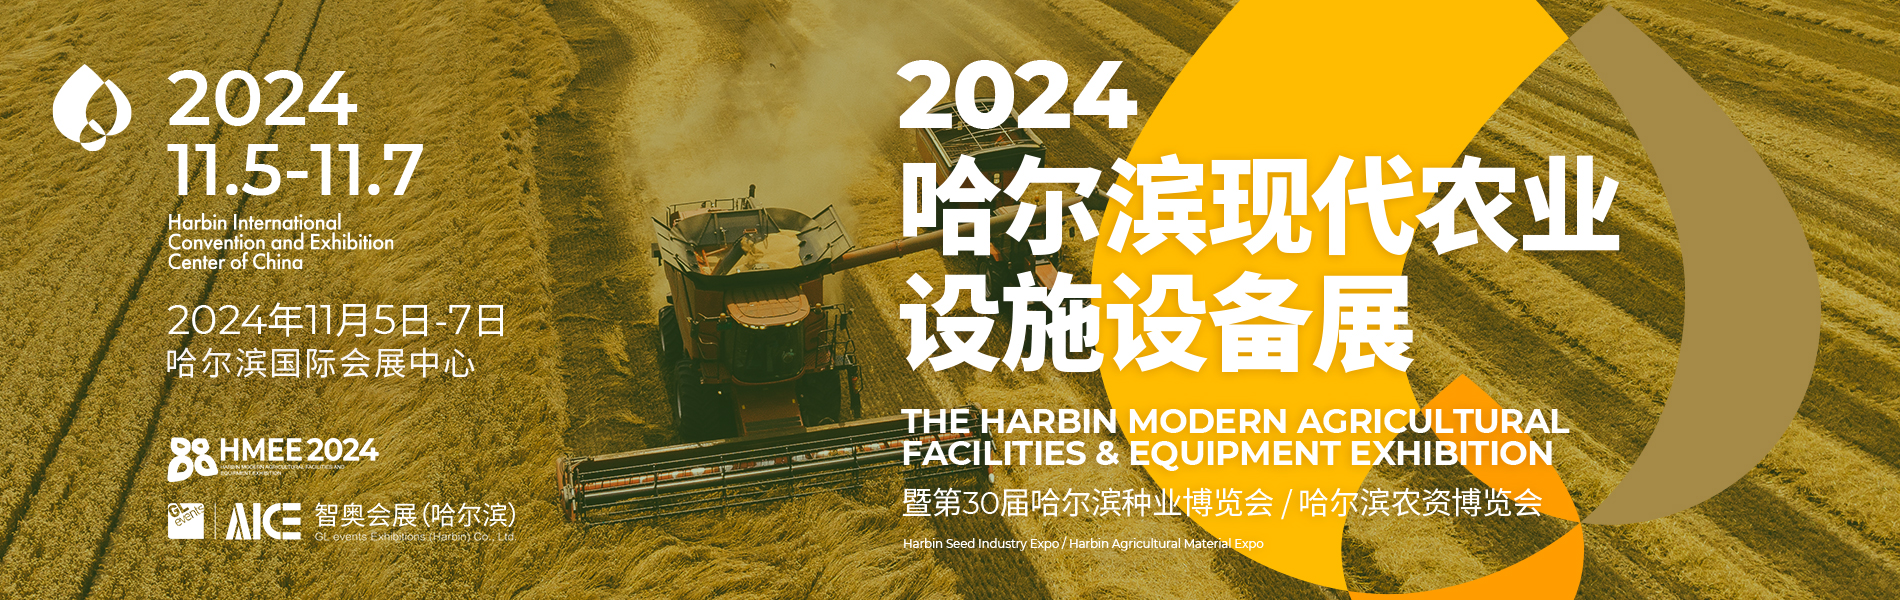 2024哈尔滨现代农业设施设备展